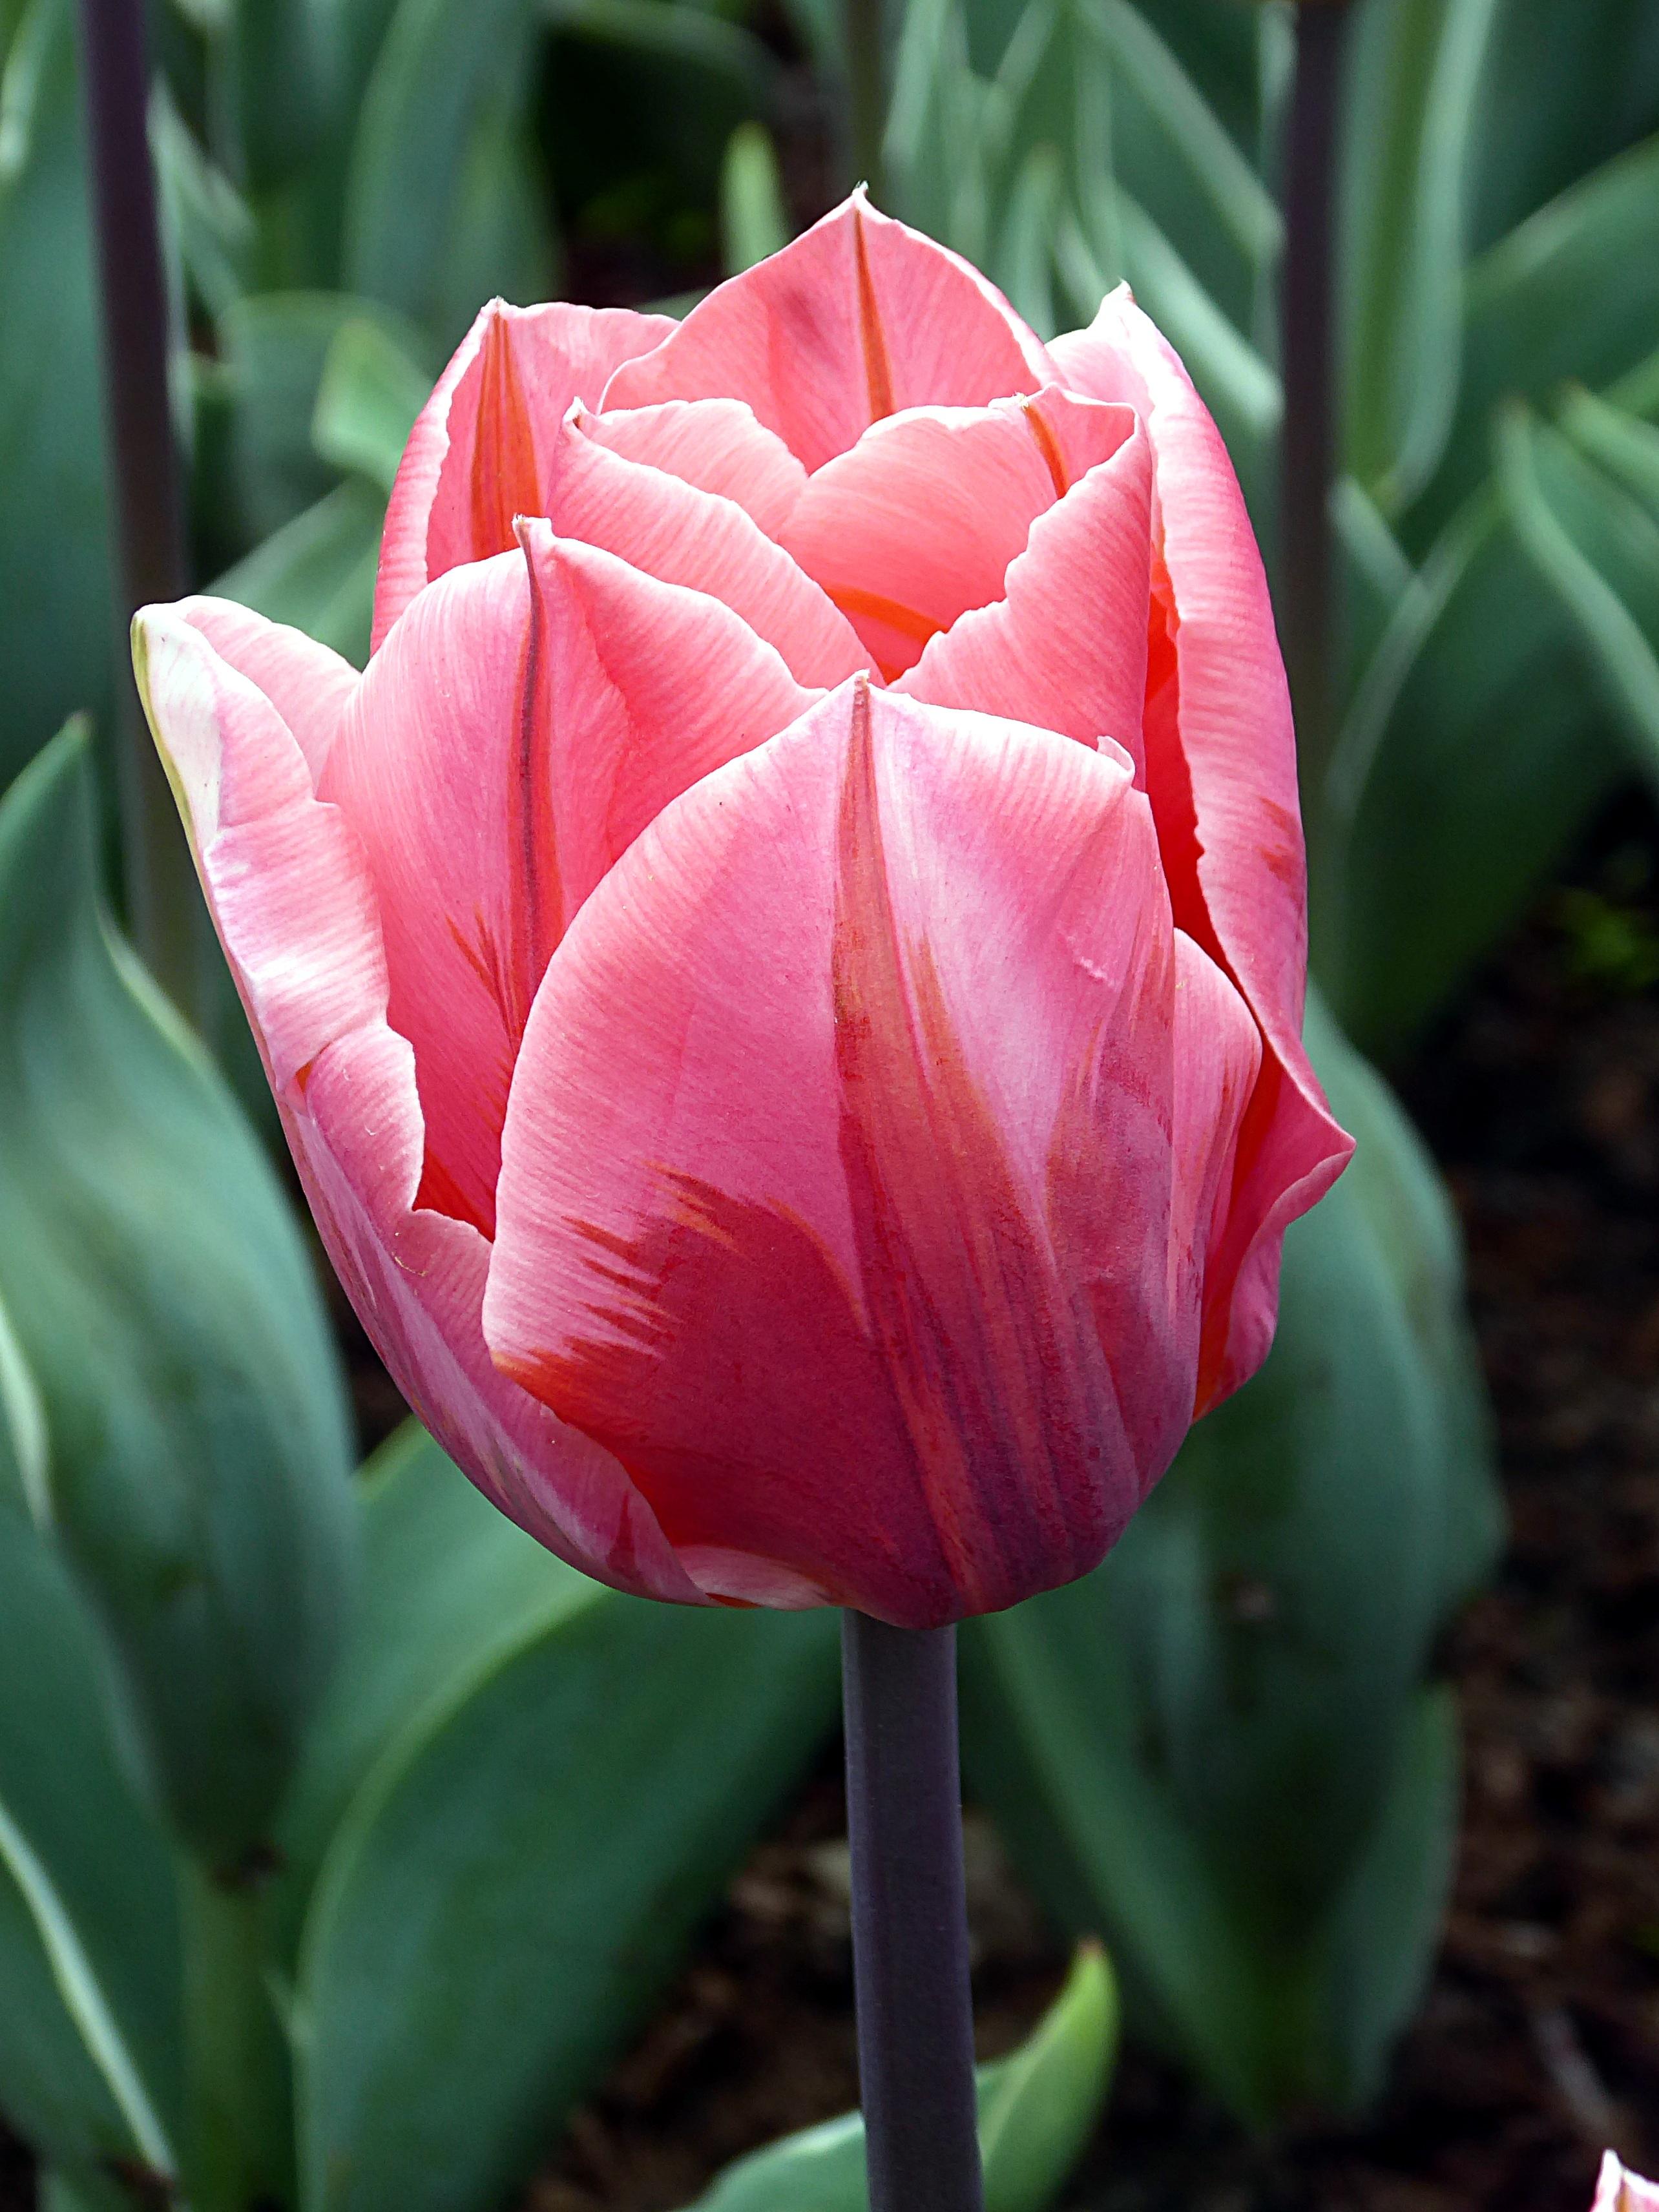 Tulip Triumph 'Pretty Princess' - Tulip from Leo Berbee Bulb Company